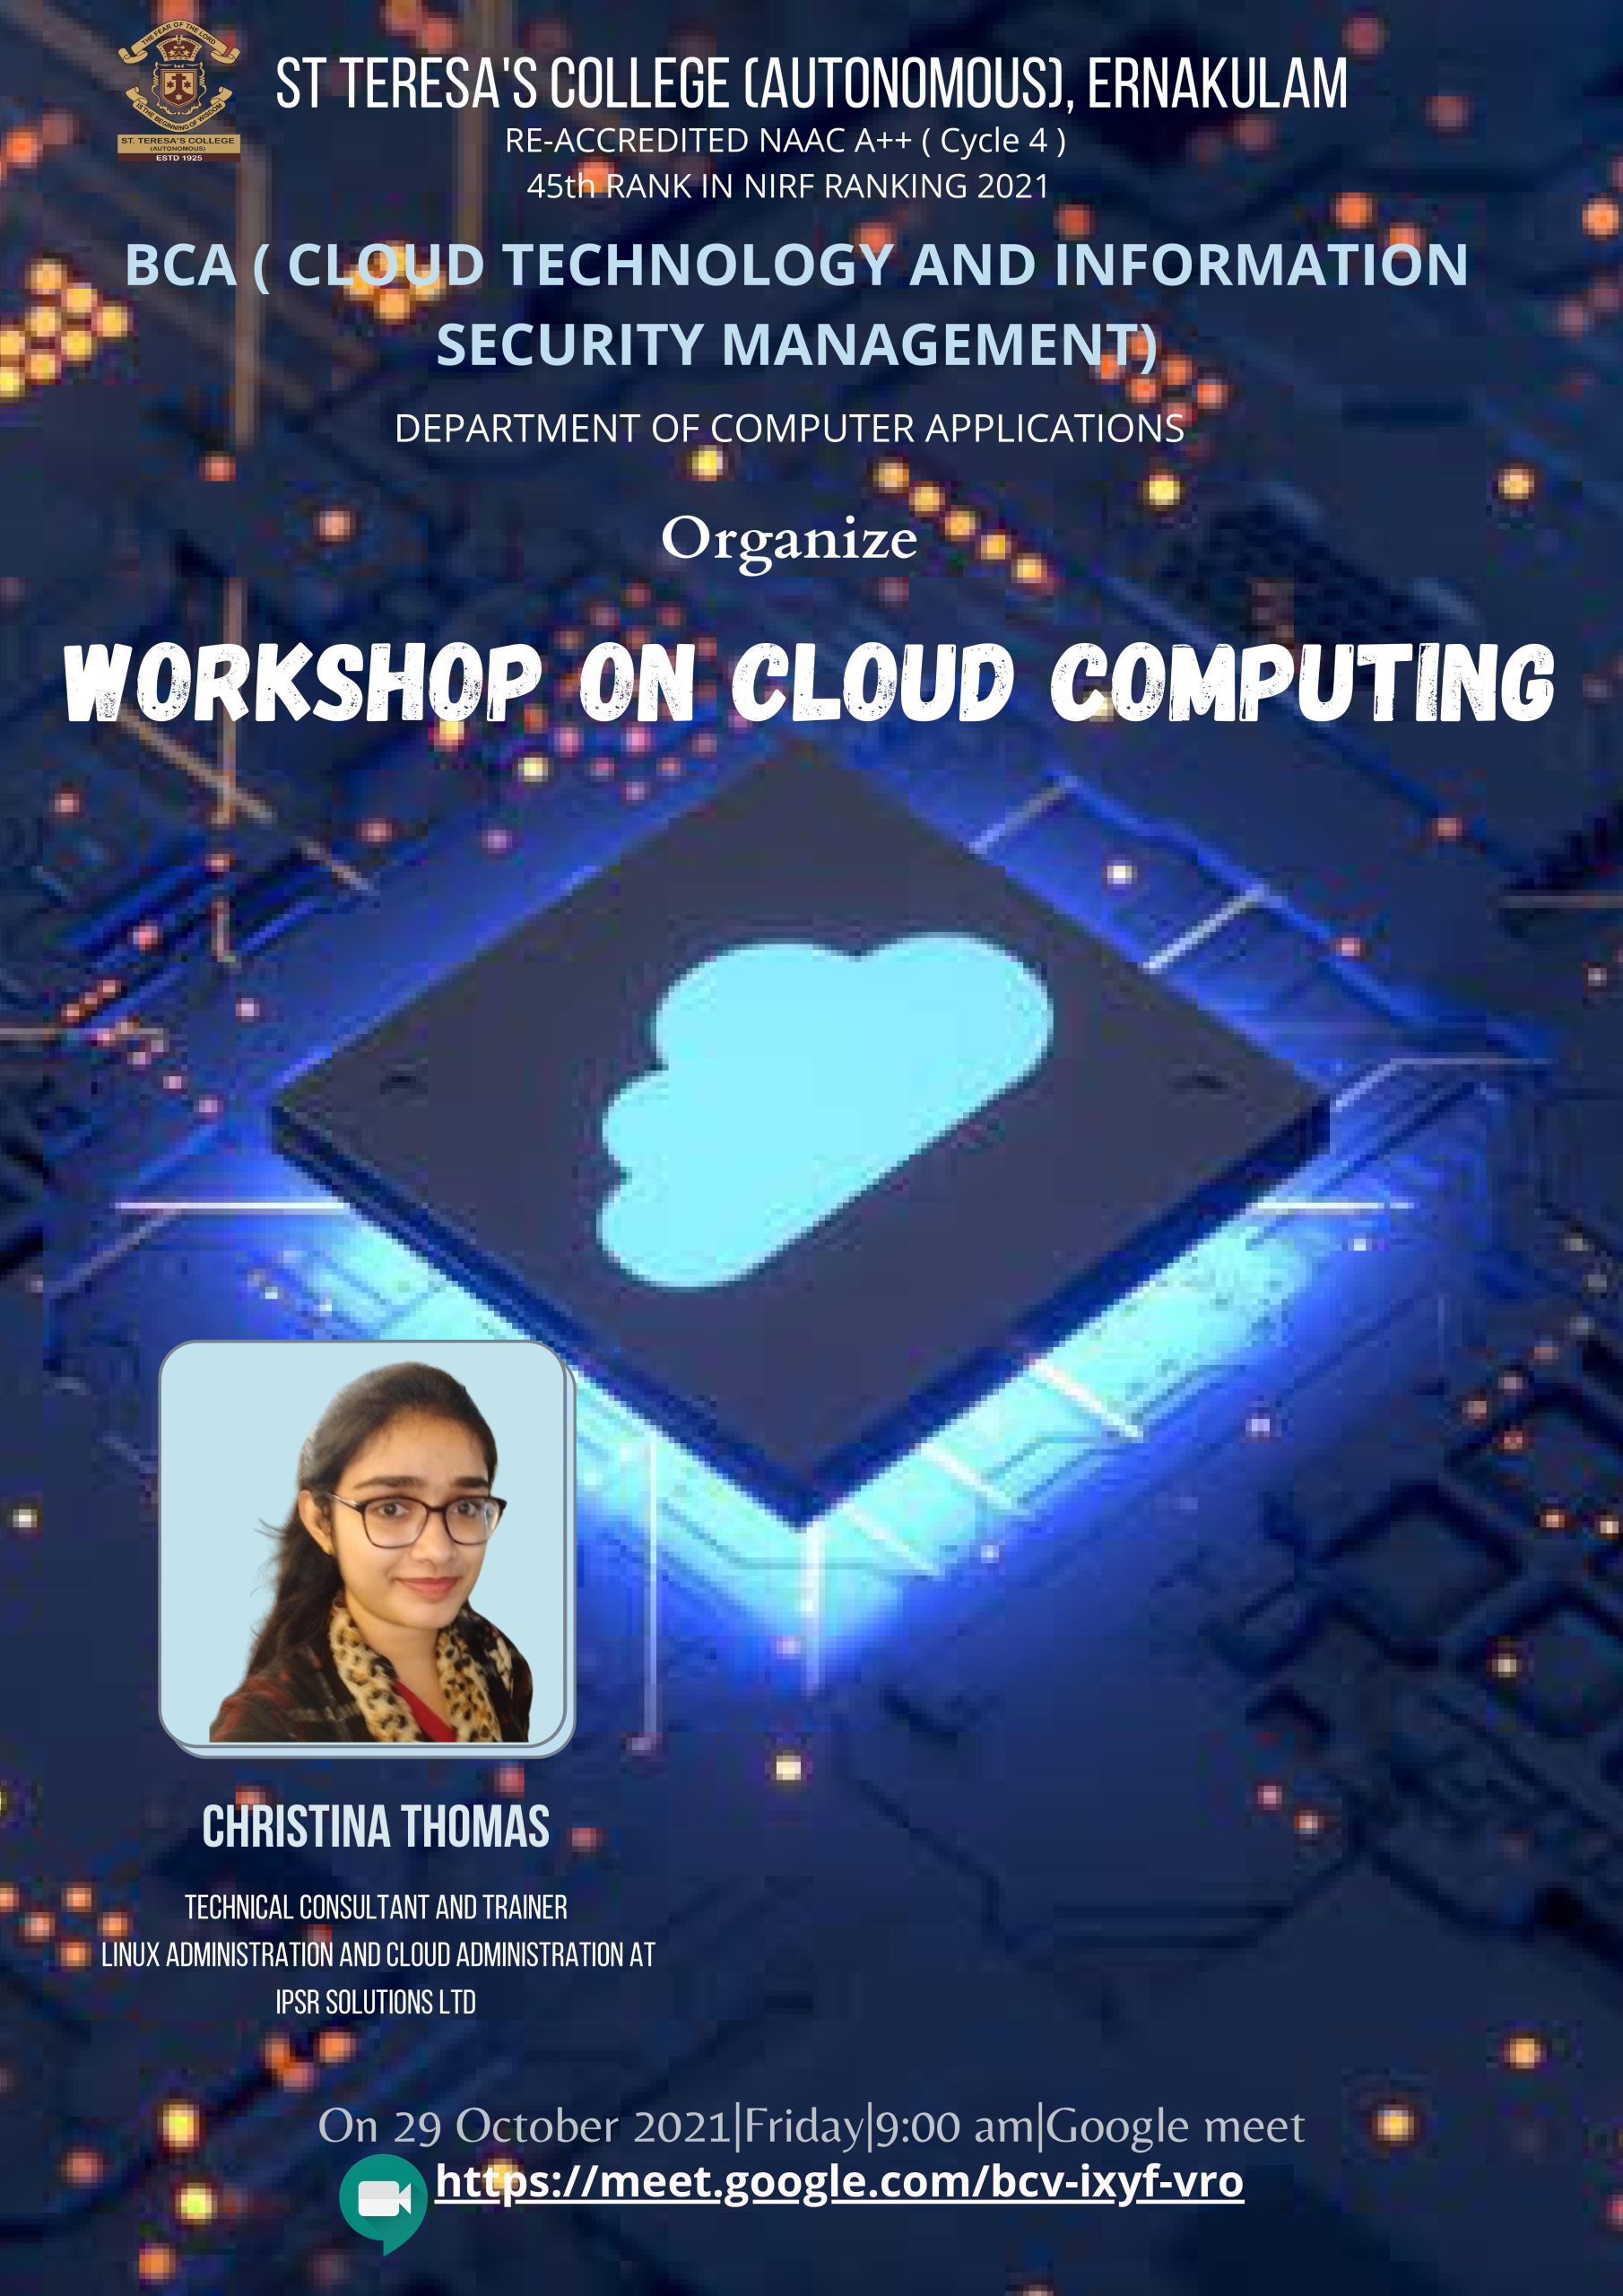 Cloud Computing Workshop